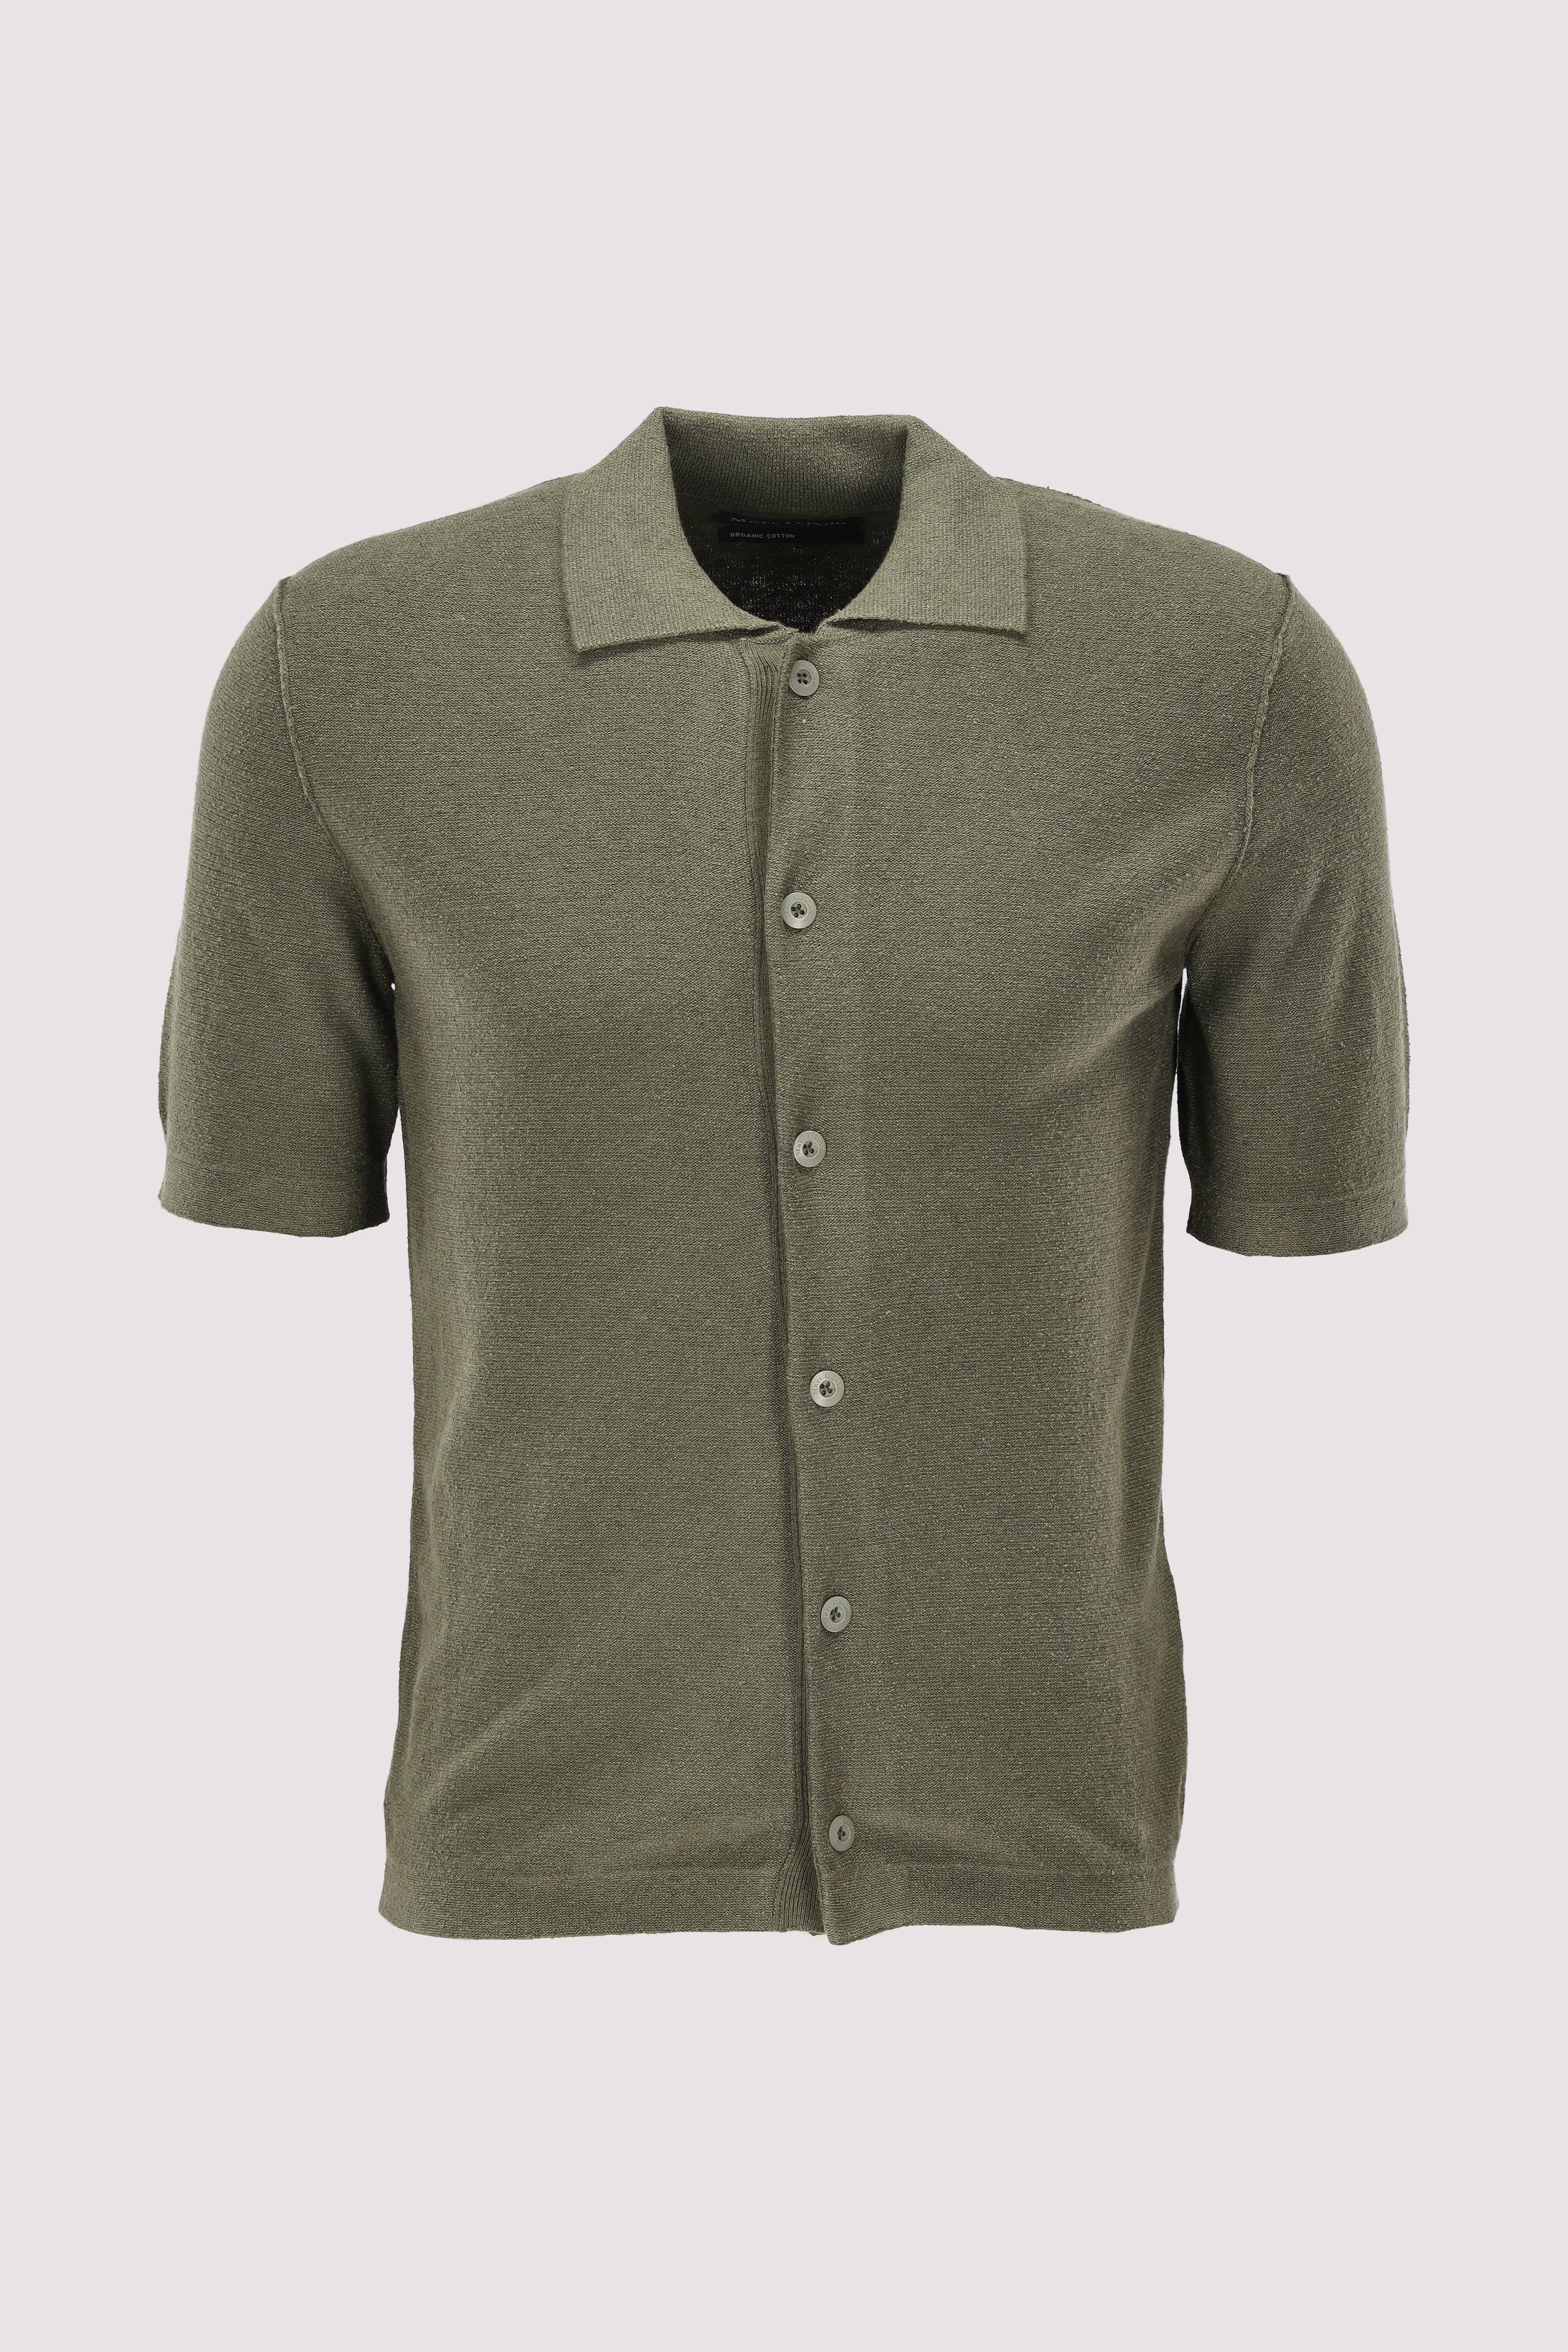 Short sleeve shirt, buttoned, 